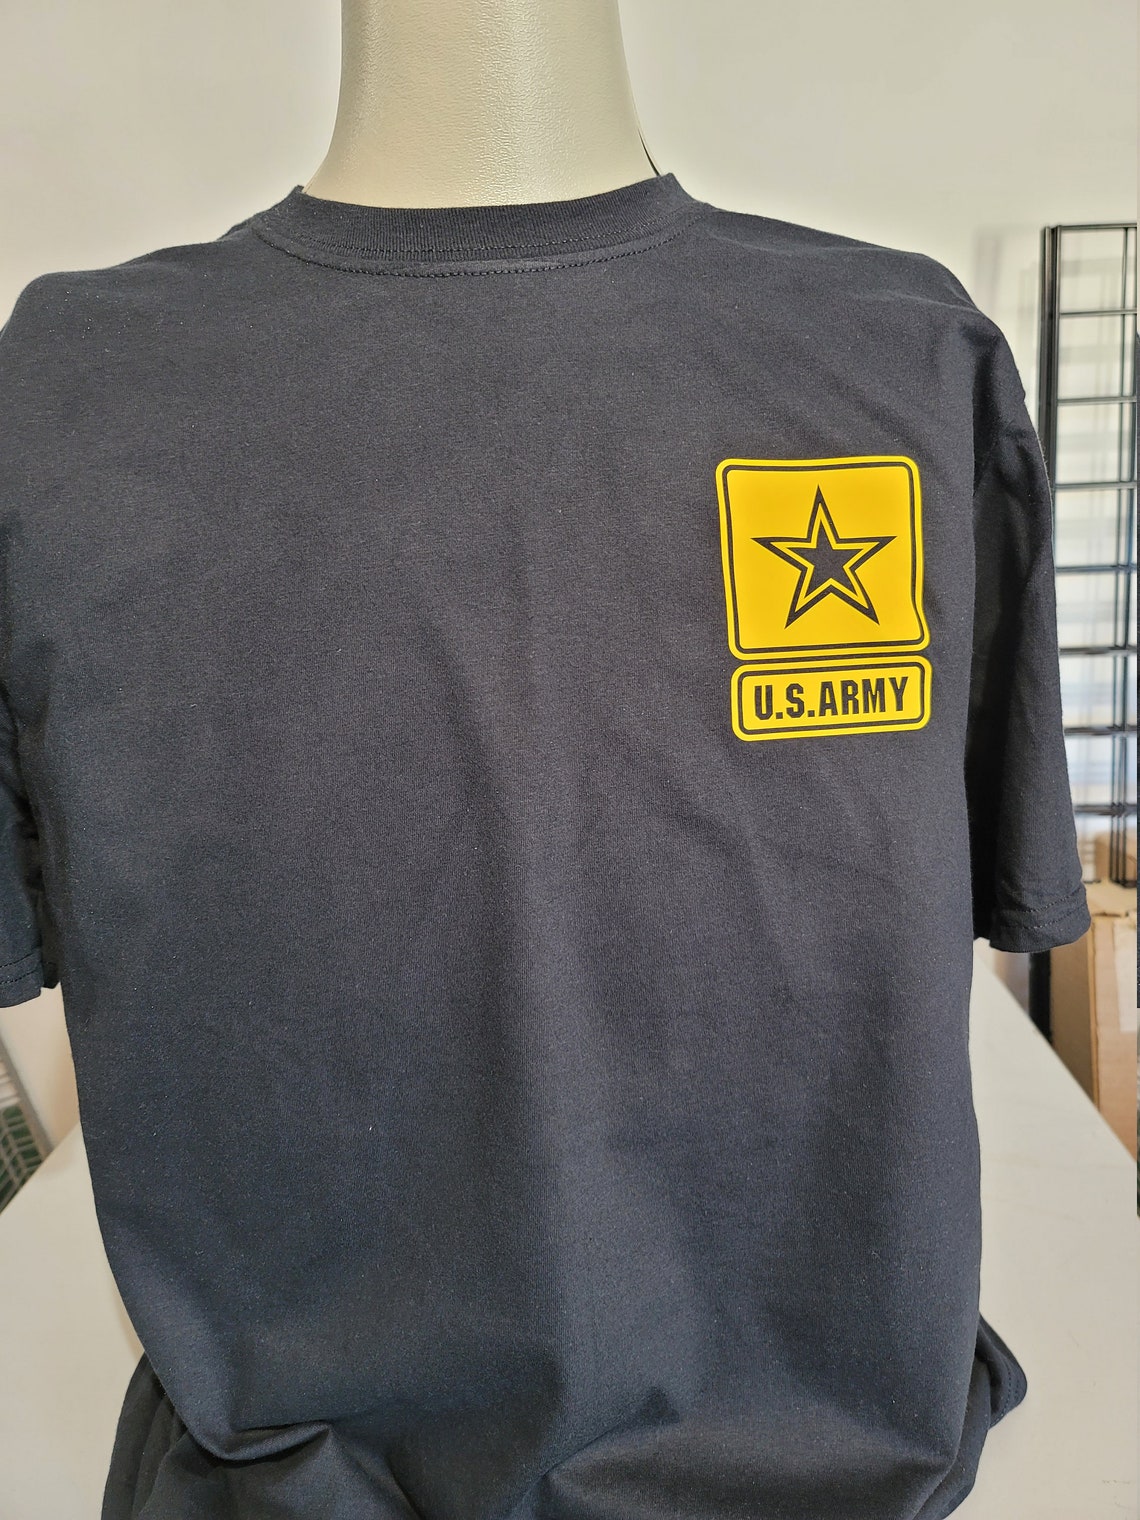 Artillery T-Shirt | Etsy